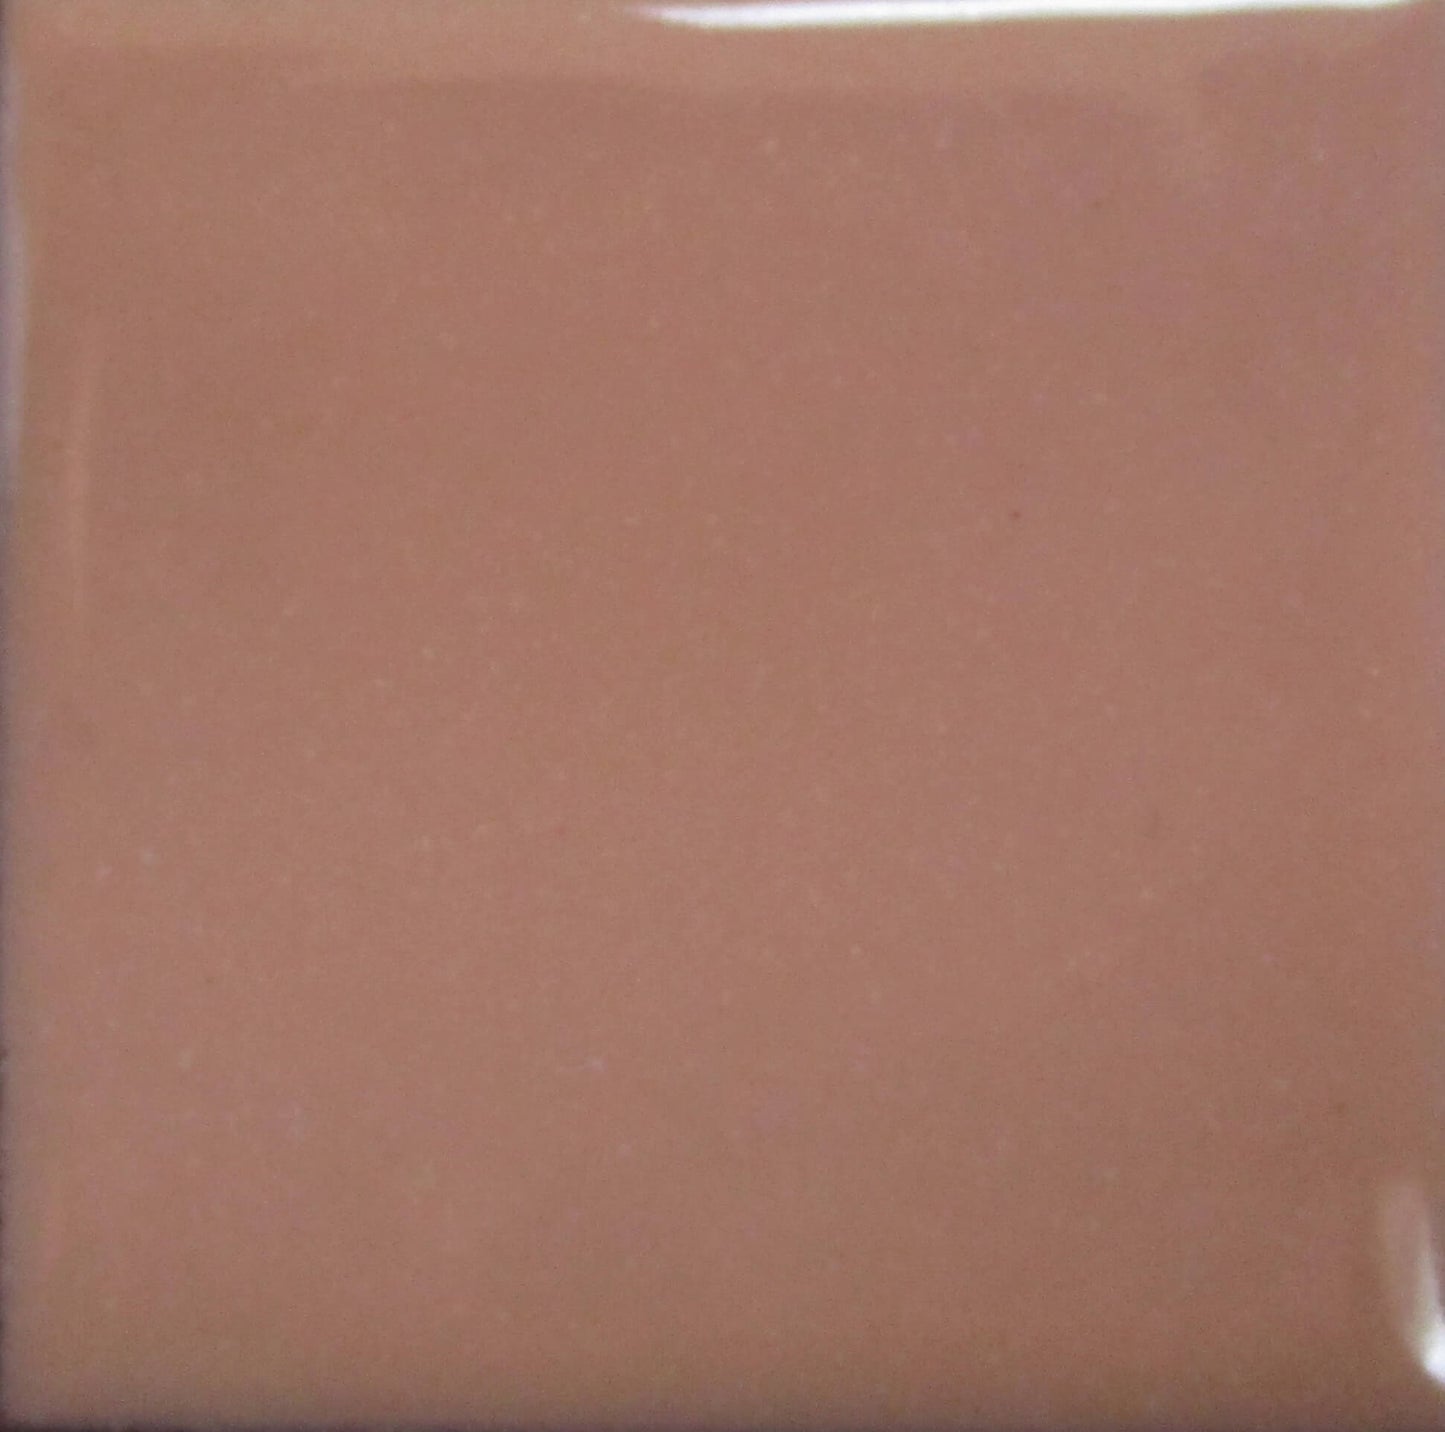 1710 Tallow Pink (G) - 1 oz